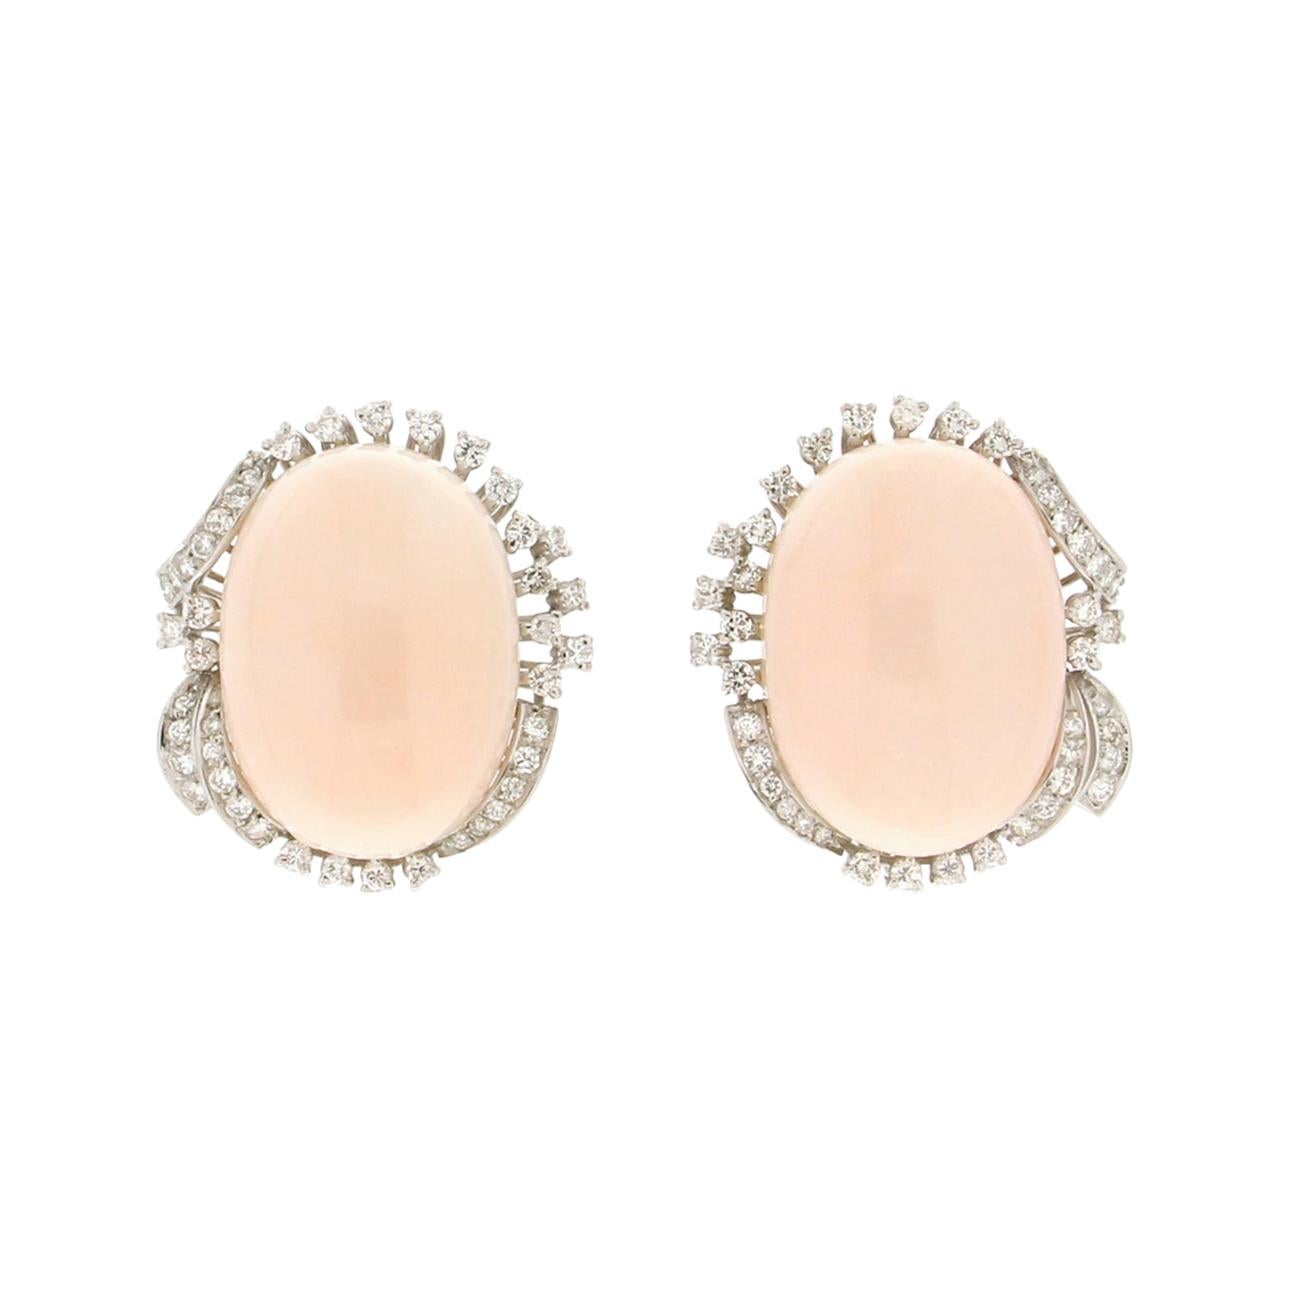 Clous d'oreilles artisanaux en or blanc 18 carats avec corail rose et diamants